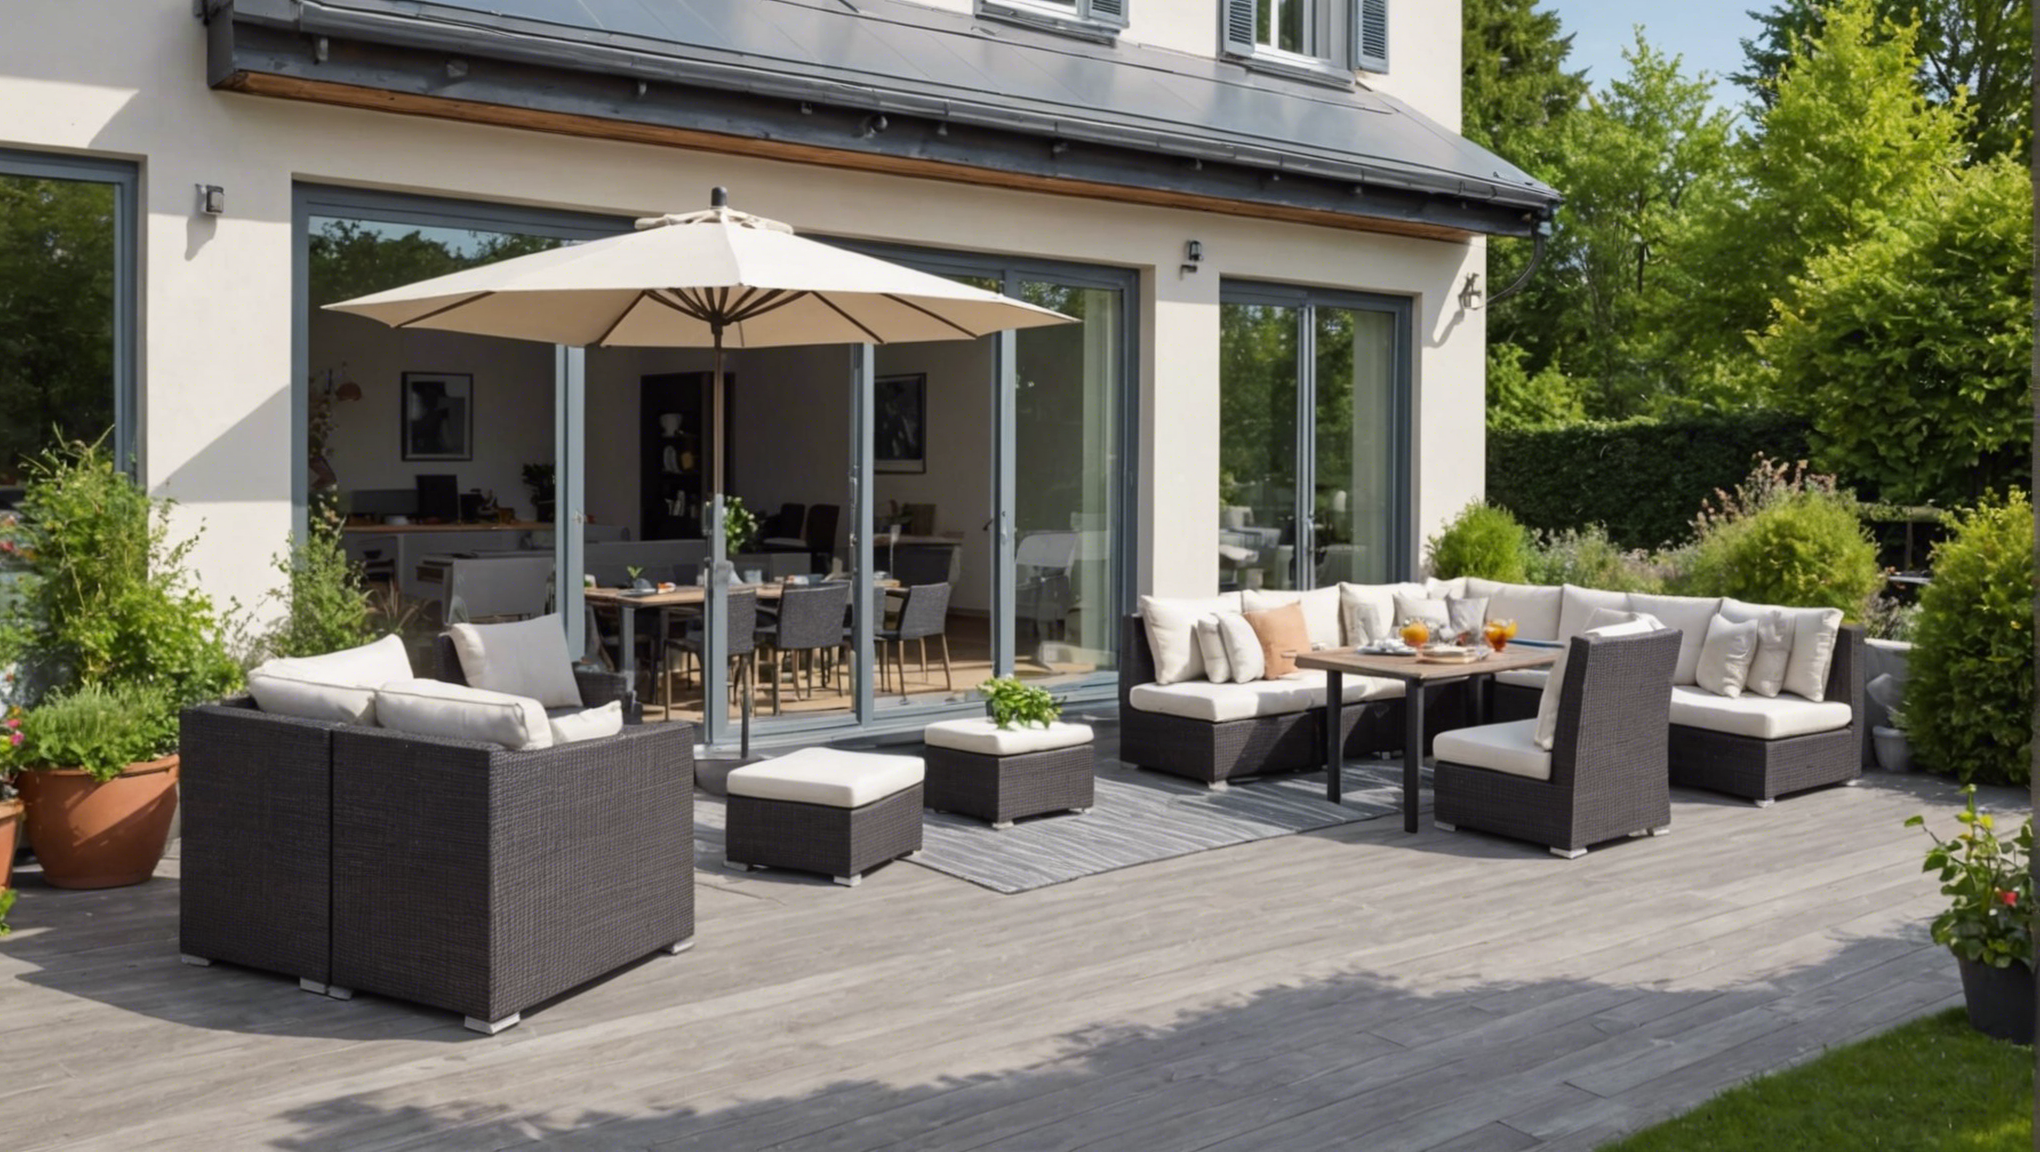 découvrez nos conseils pour aménager une terrasse devant votre maison et créer un espace accueillant. profitez de cet espace extérieur pour des moments de détente et de convivialité.